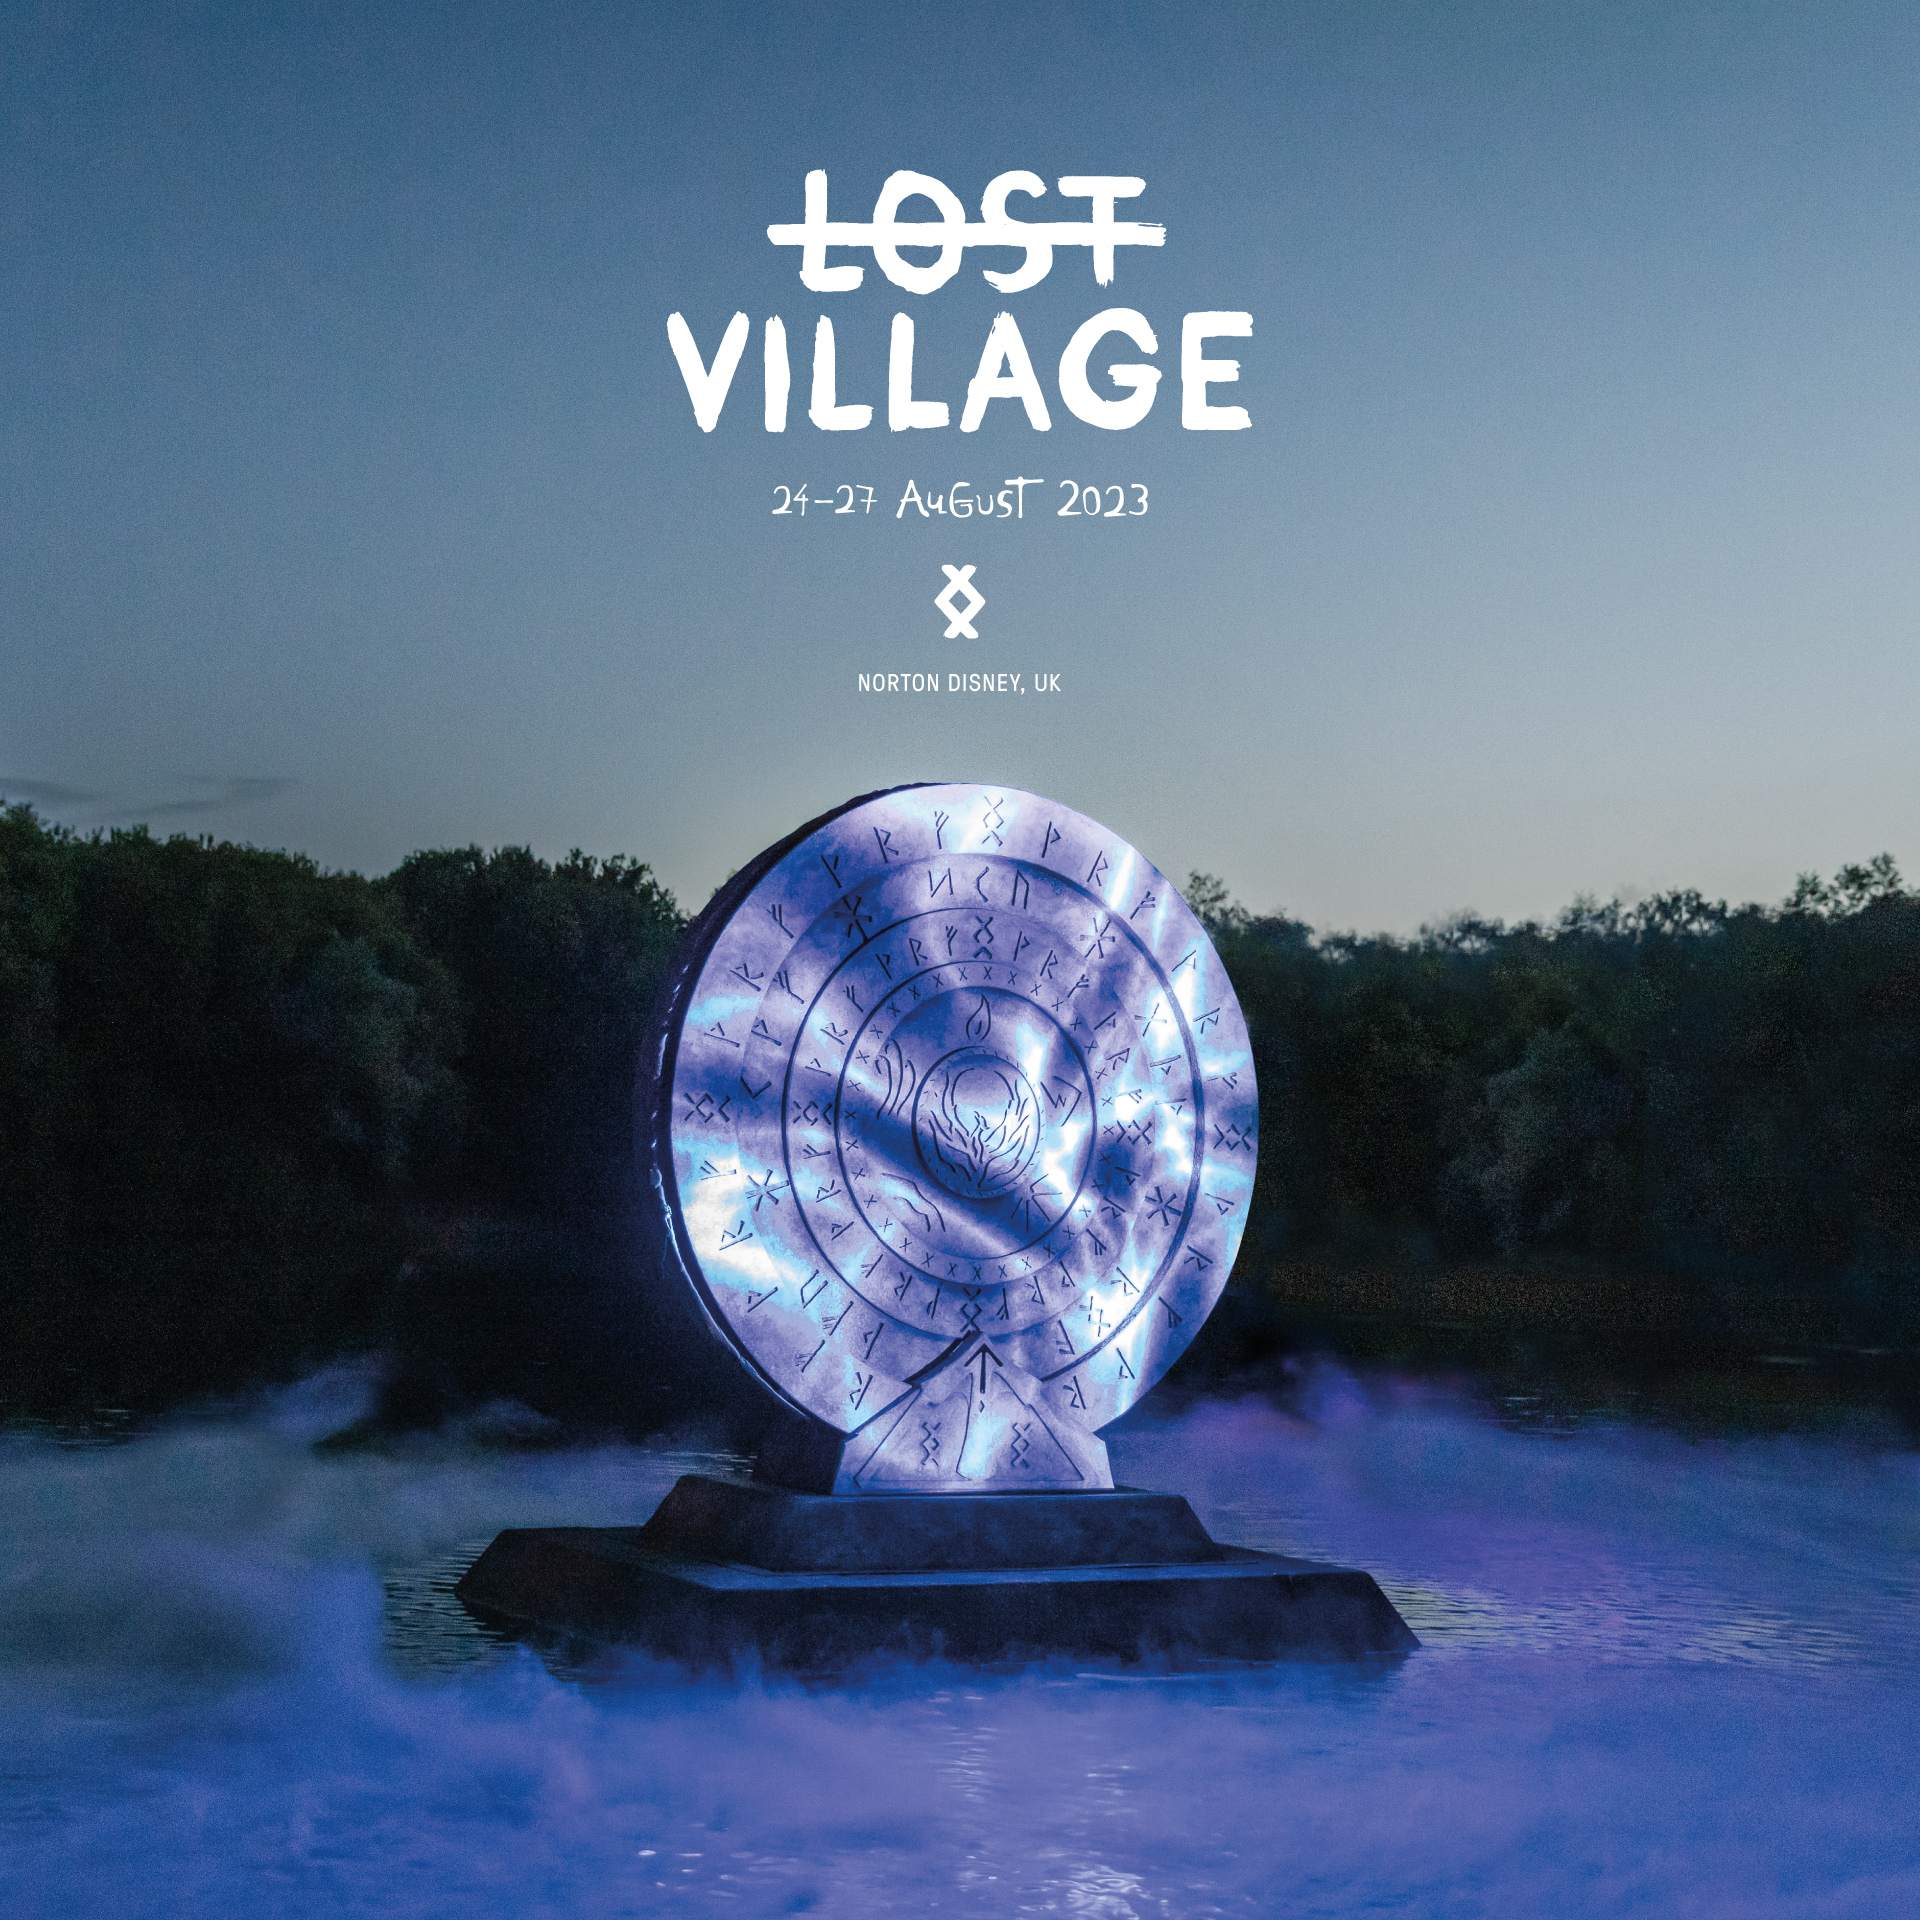 Lost Village 2023 - Página frontal